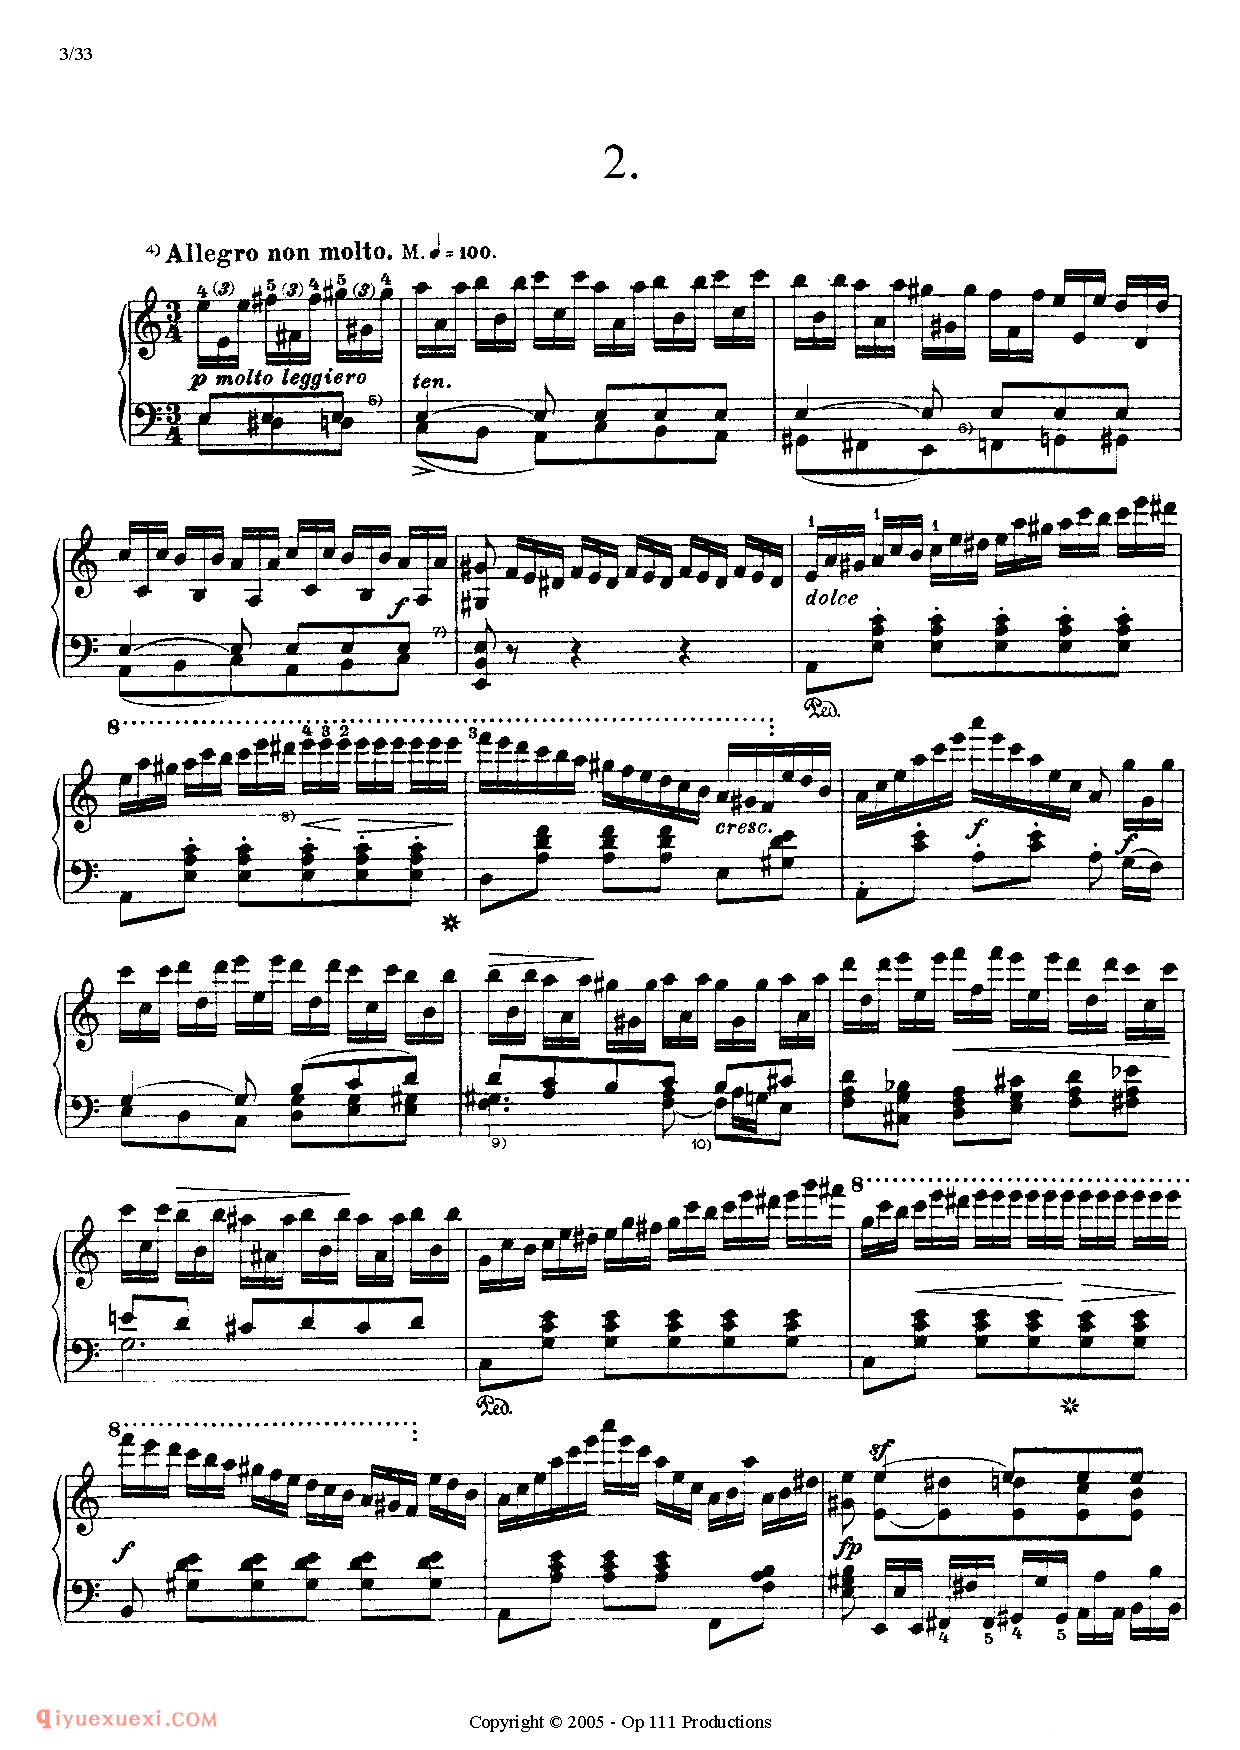 李斯特超级技巧练习曲（Liszt 12 Etudes D'execution Transcendante）初版超技_超高难度钢琴谱